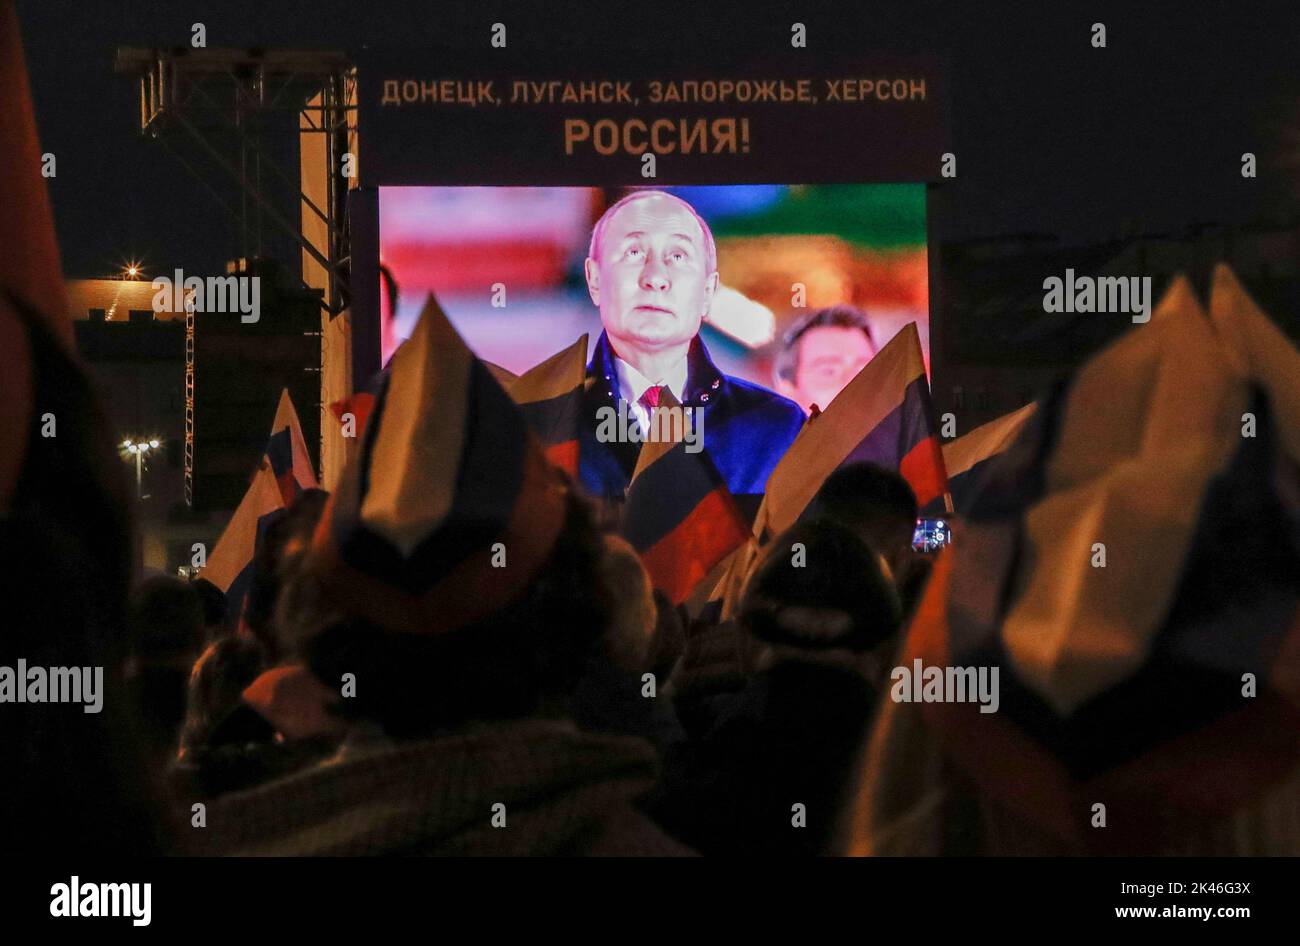 Der russische Präsident Wladimir Putin wird während eines Konzerts zur erklärten Annexion der von Russland kontrollierten Gebiete der vier ukrainischen Regionen Donezk, Luhansk, Cherson und Saporischschschja auf einer Leinwand zu sehen sein, nachdem die russischen Behörden in den besetzten Gebieten der Ukraine Volksabstimmungen abgehalten haben, die von Kiew und Regierungen weltweit verurteilt wurden, In der Nähe des Kremls und des Roten Platzes im Zentrum von Moskau, Russland, 30. September 2022. Ein Slogan auf der Leinwand lautet: 'Donezk, Luhansk, Saporischschschja, Cherson - Russland!' REUTERS/REUTERS-FOTOGRAF Stockfoto